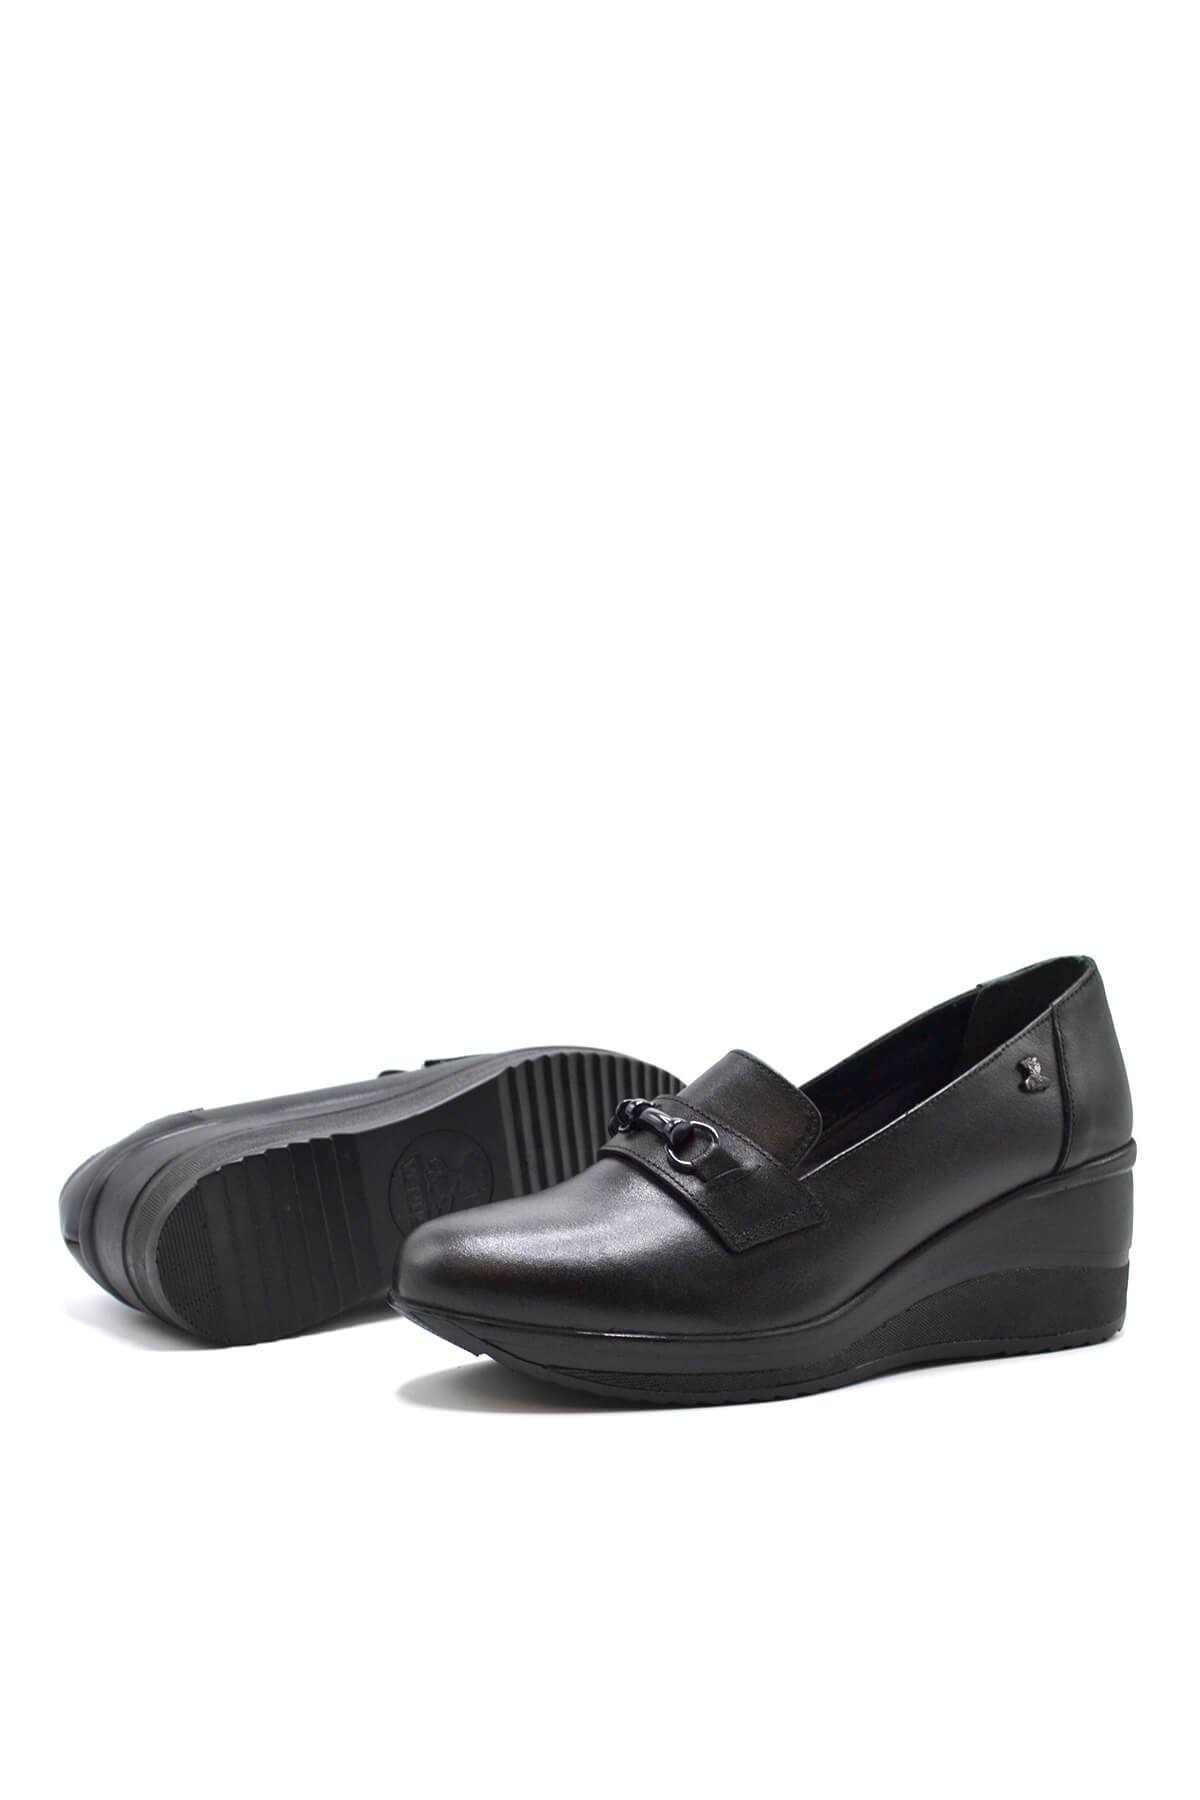 Kadın Dolgu Topuk Deri Ayakkabı Siyah 2111514K - Thumbnail